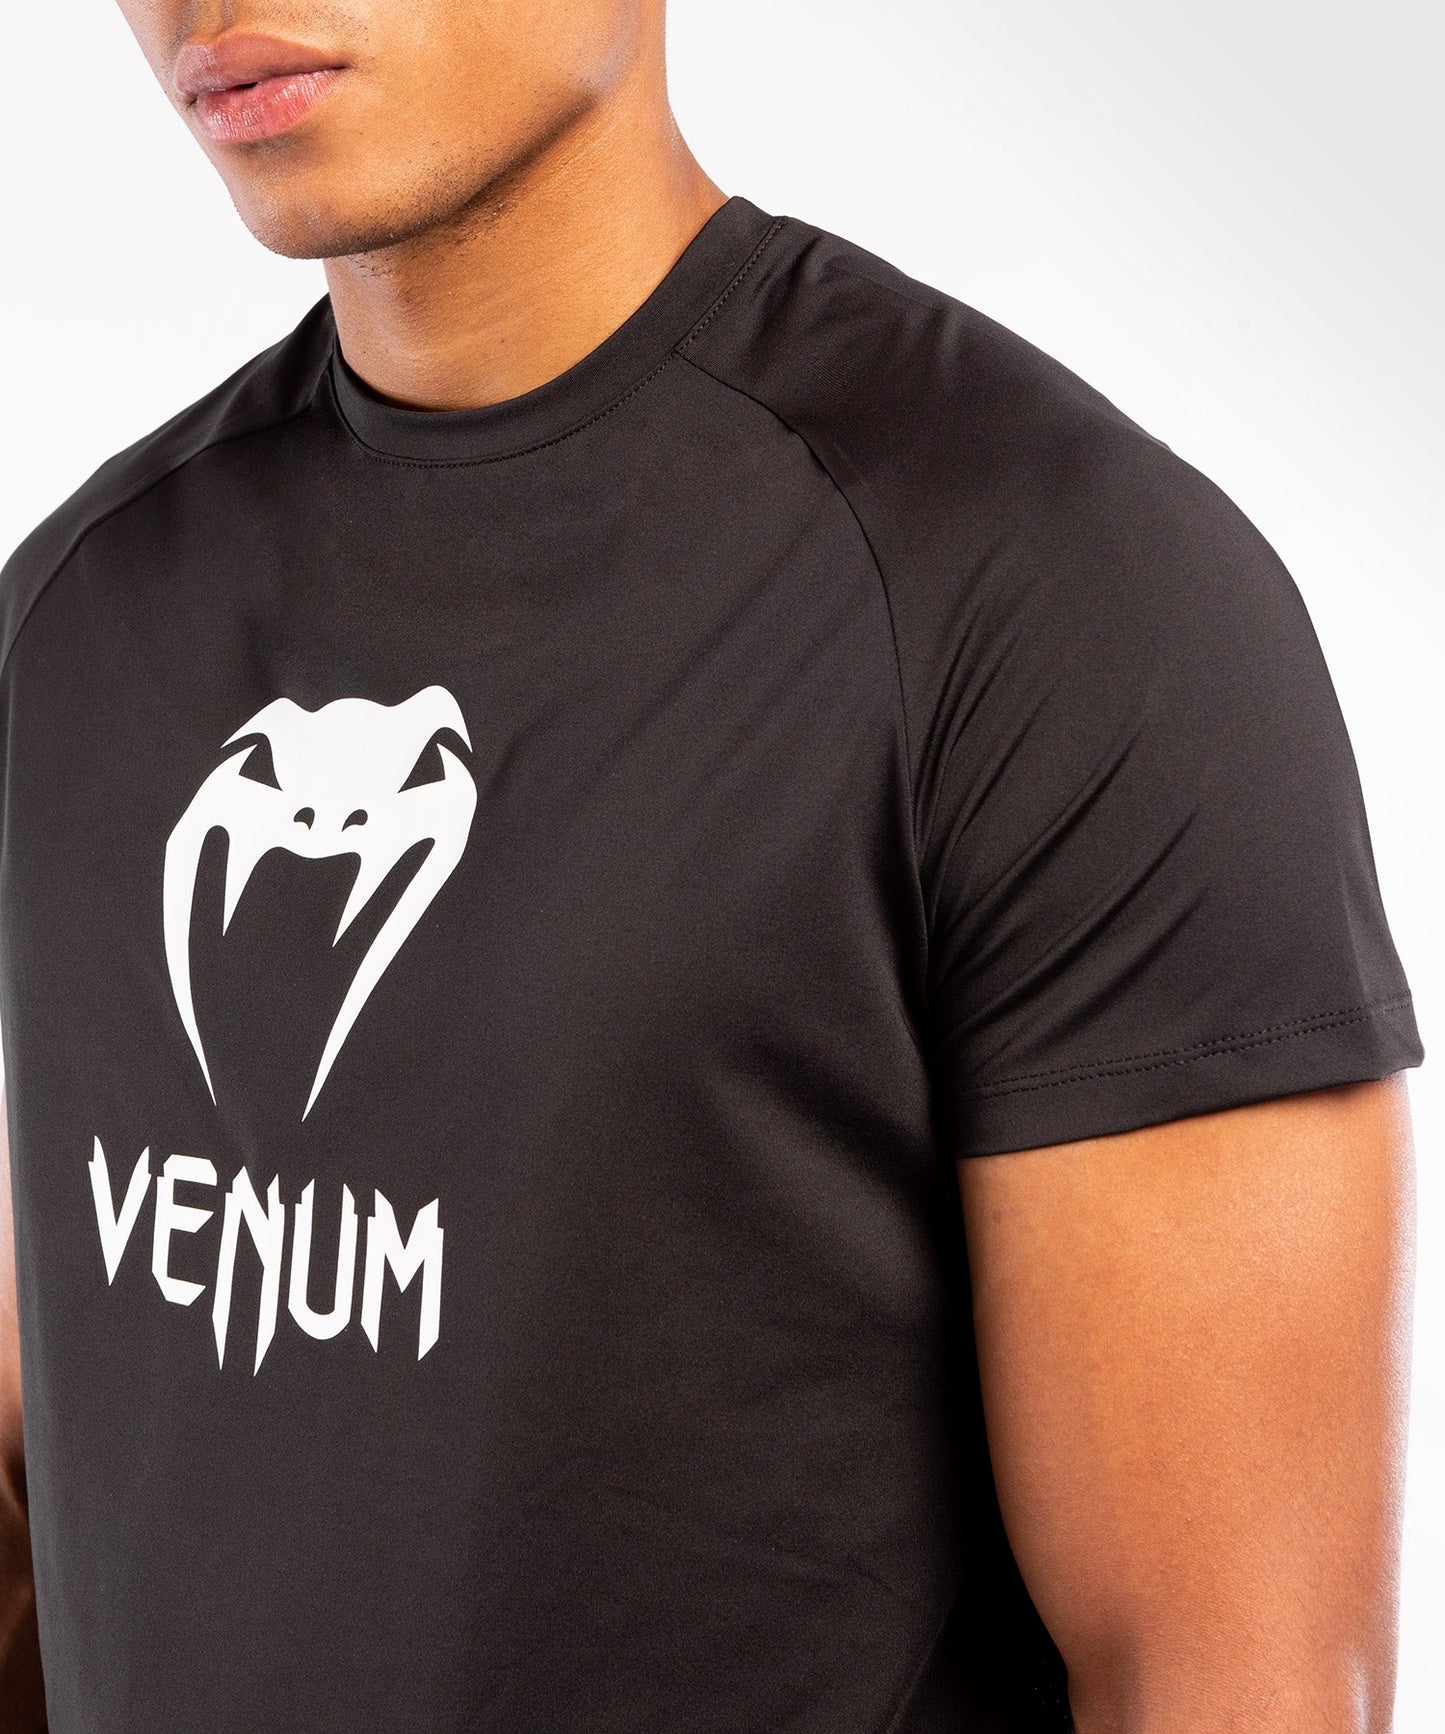 Venum Classic Dry Tech T-shirt – Black